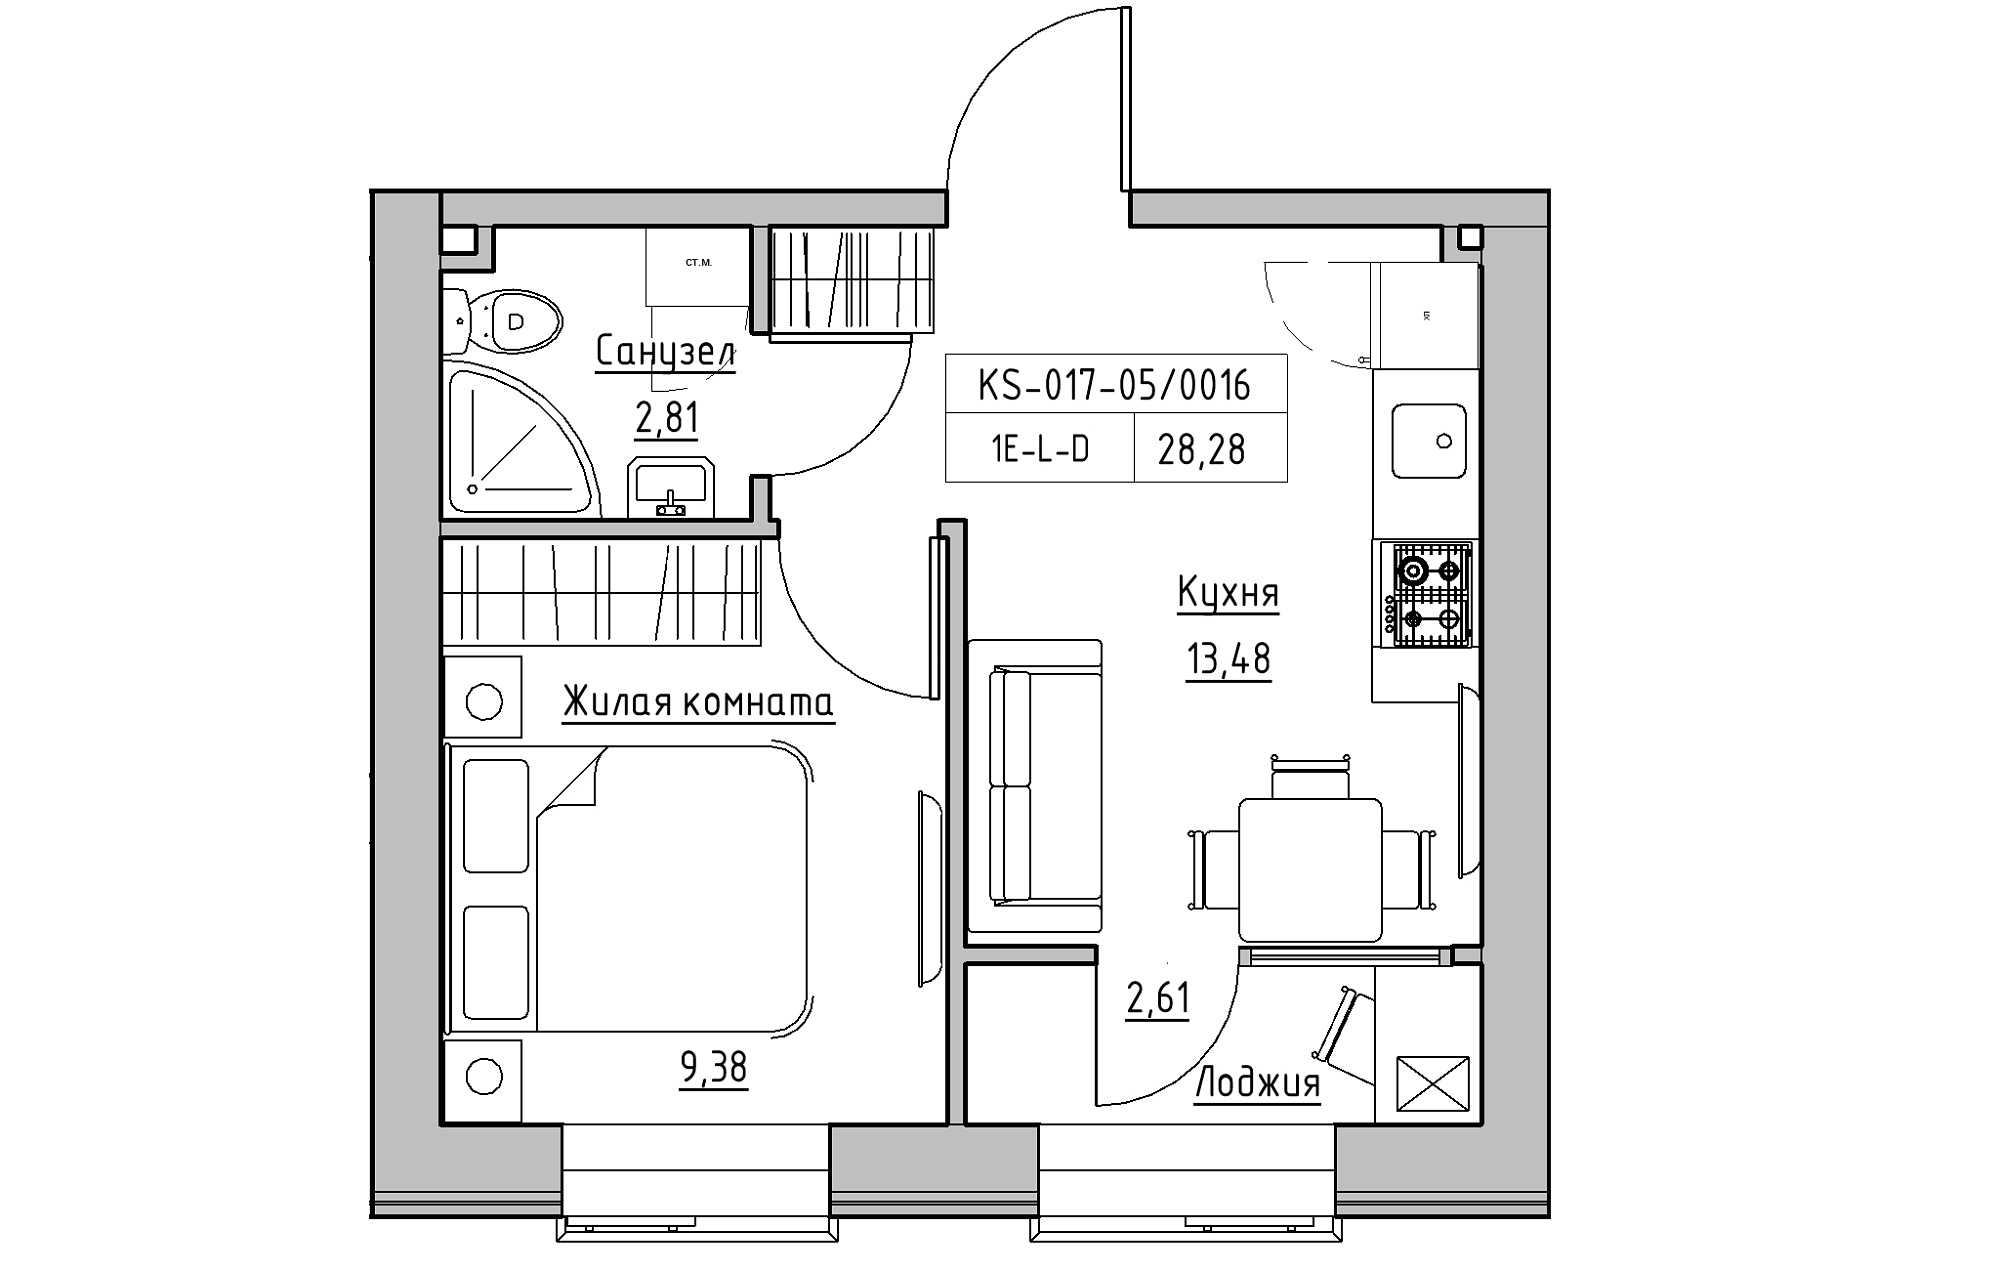 Планування 1-к квартира площею 28.28м2, KS-017-05/0016.